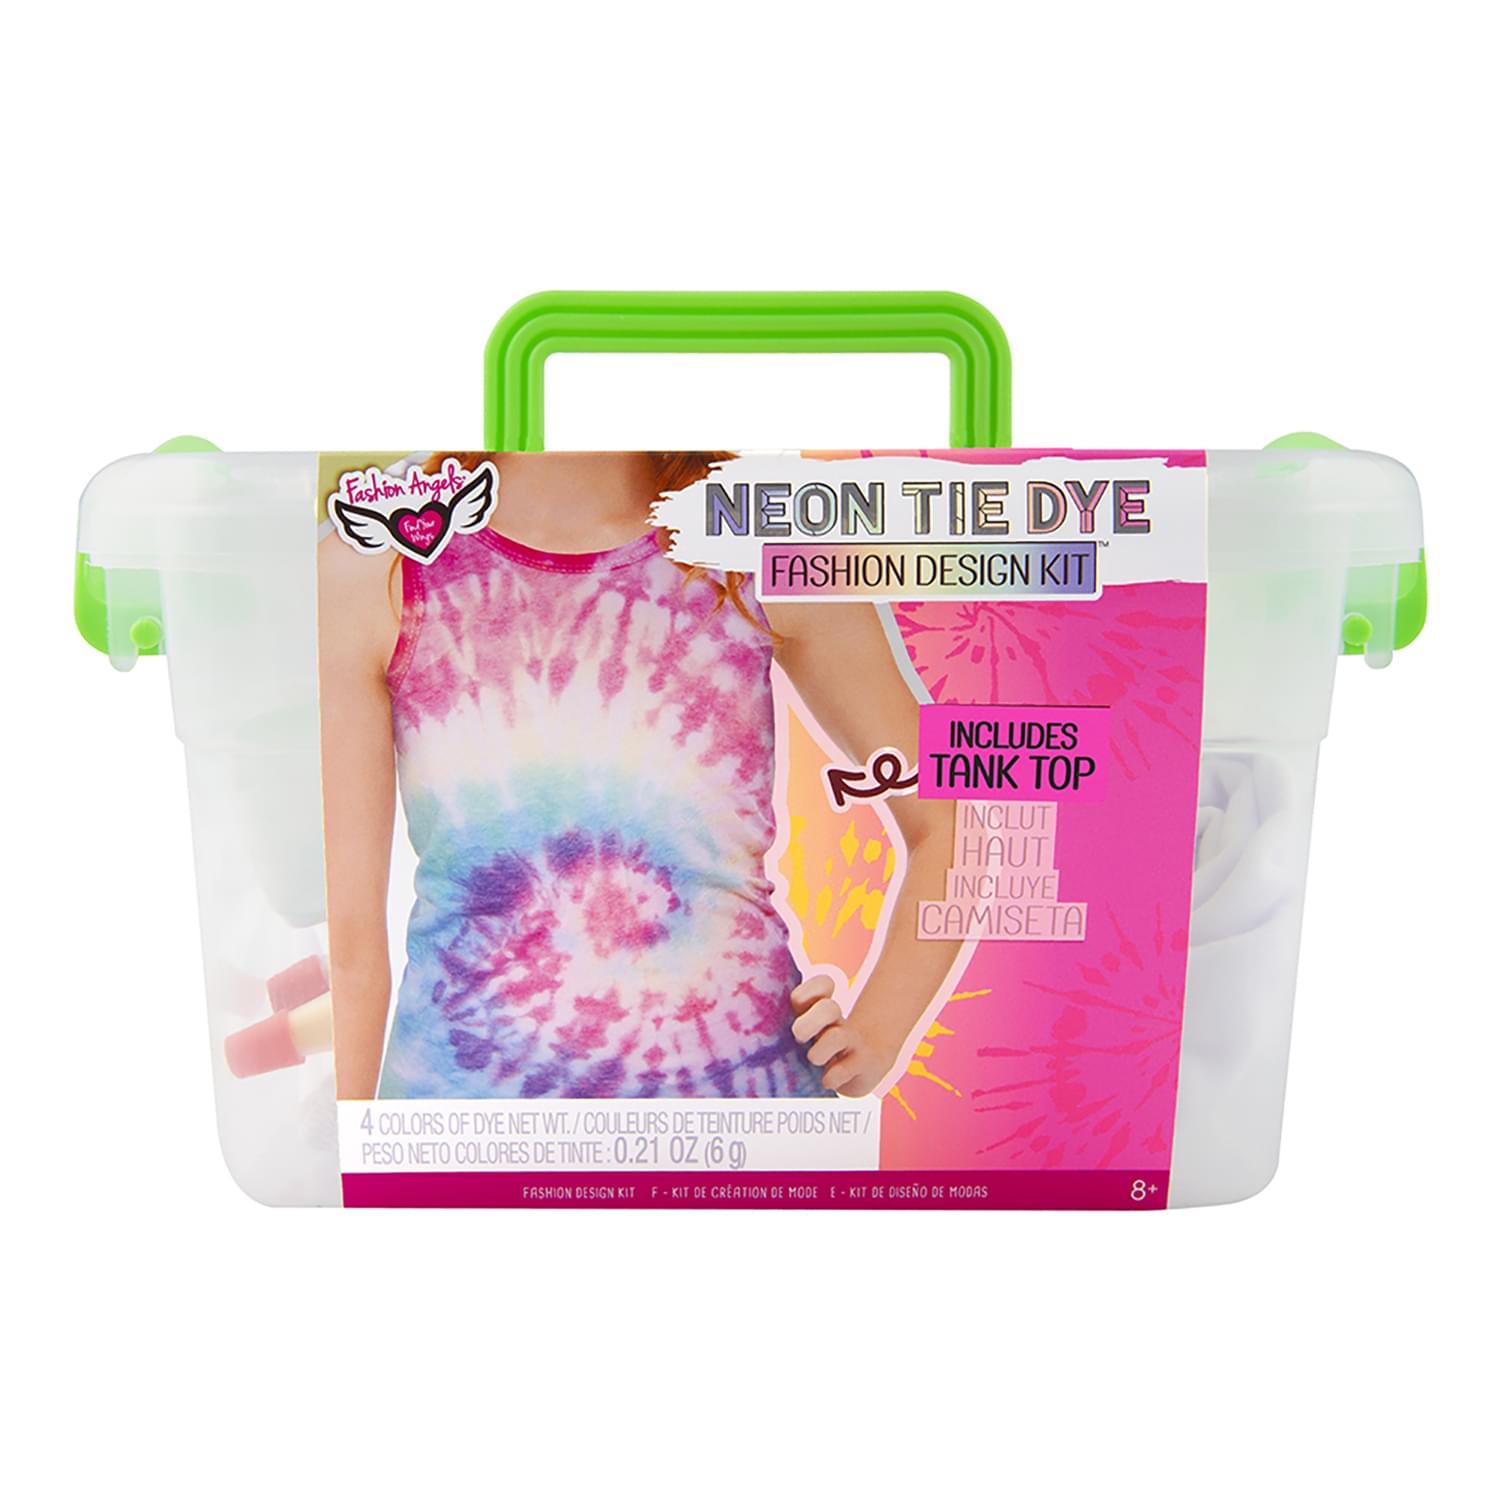 Fashion Angels Neon Tie Dye Tank Top Fashion Design Kit